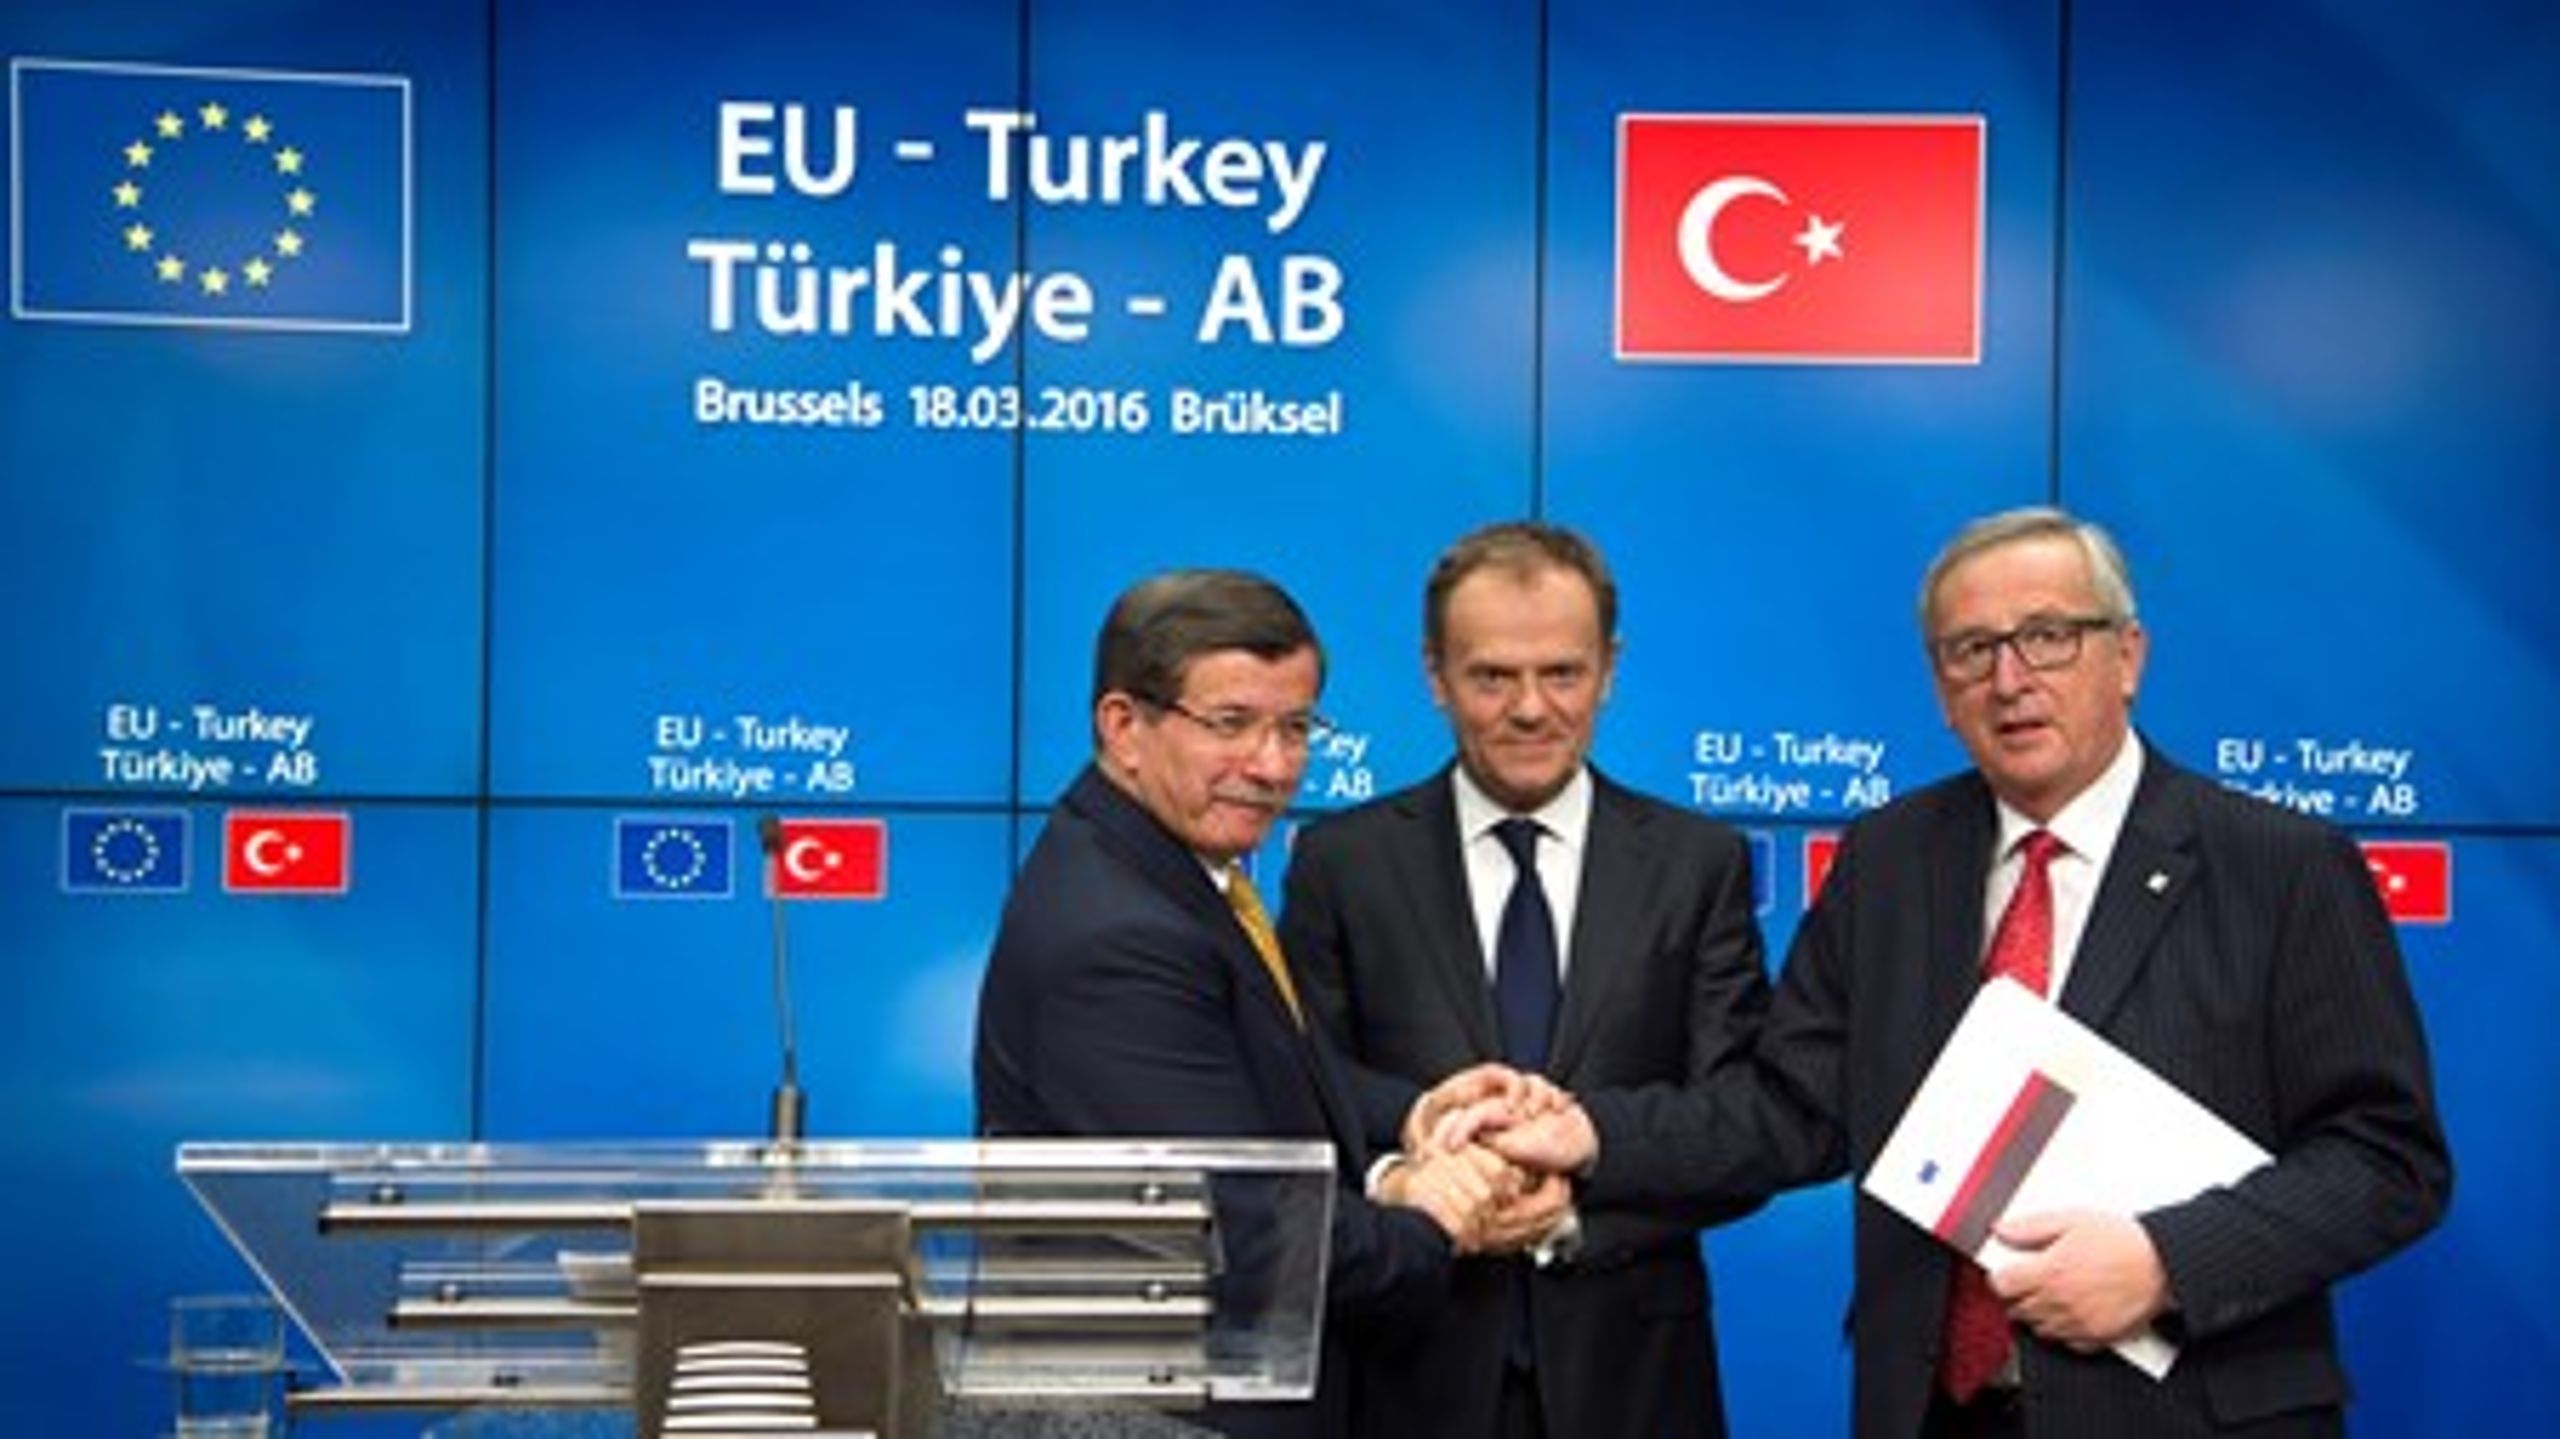 &nbsp;Ahmet Davutoglu, Turkiets premiärminister,
Donald Tusk, ordförande för&nbsp;Europeiska rådet och Jean-Claude Juncker, ordförande
EU-kommissionen
på fredagens presskonferens.
<br>